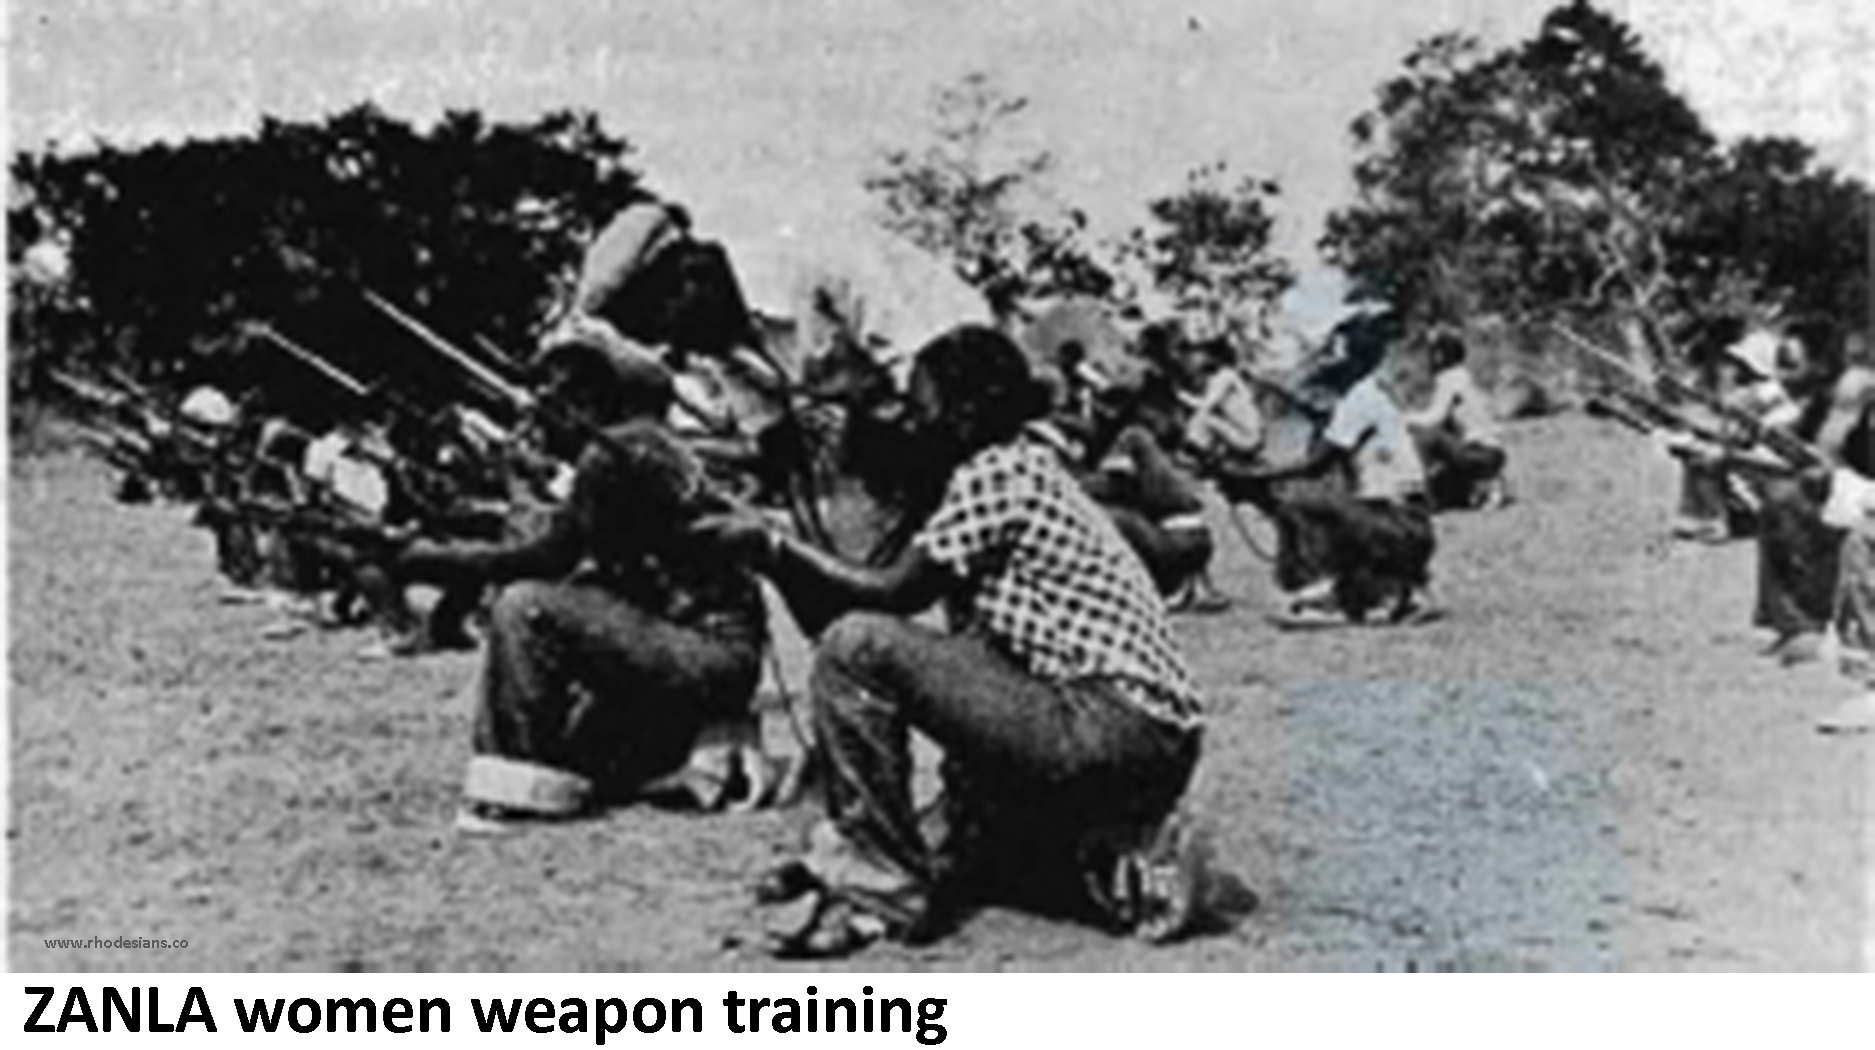 ZANLA women undergoing weapons training in Mozambique during the Rhodesian Bush War